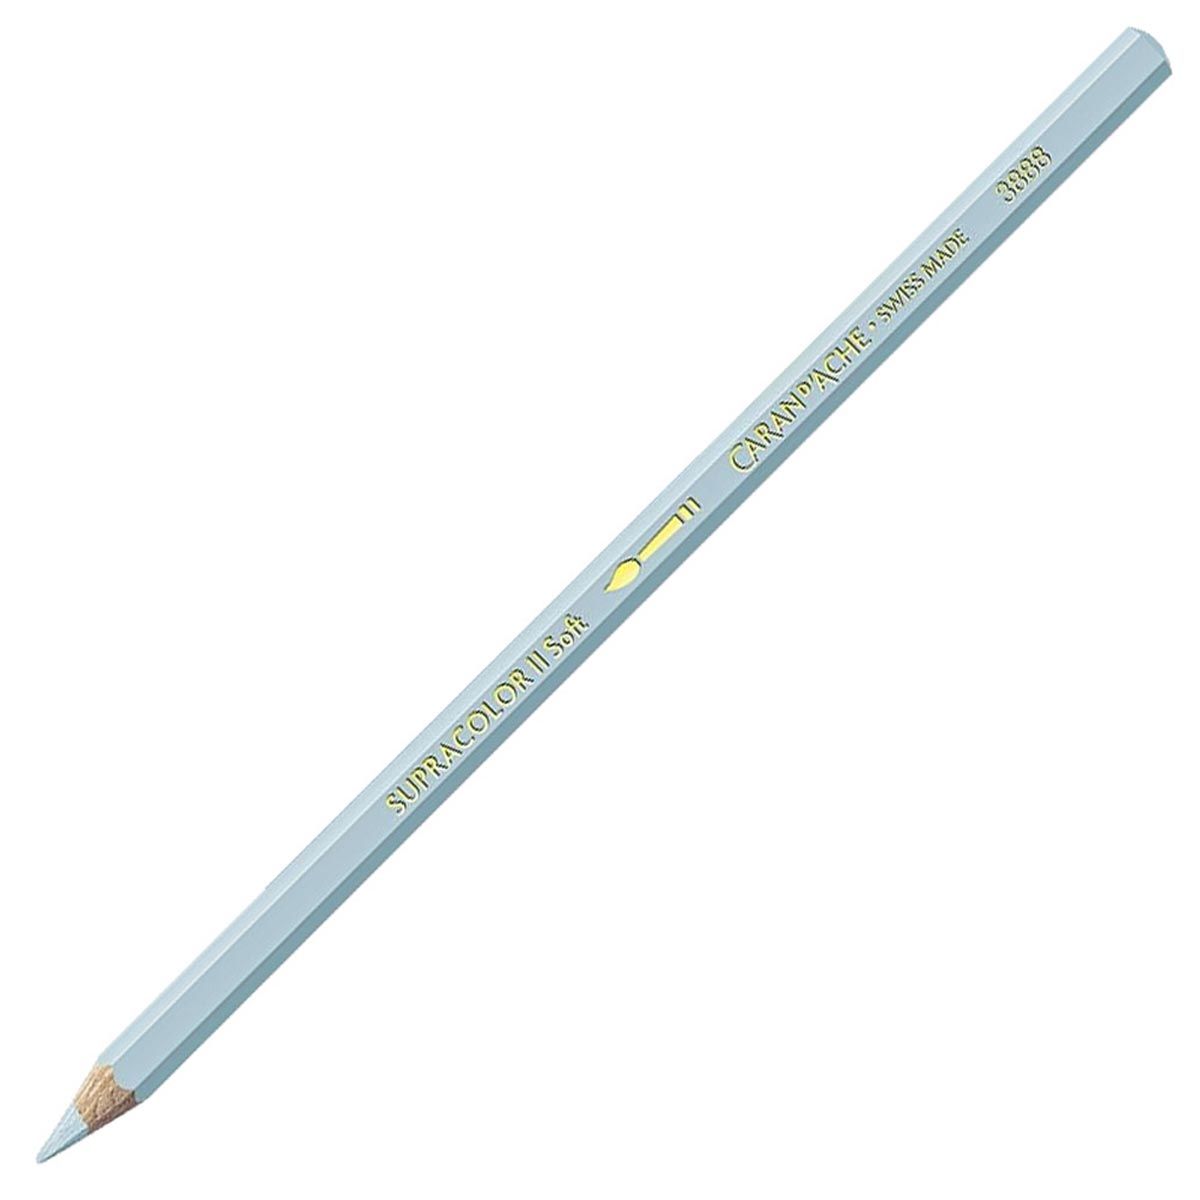 Caran d'Ache Supracolor ll Soft Aquarelle Pencil - Steel Grey 004